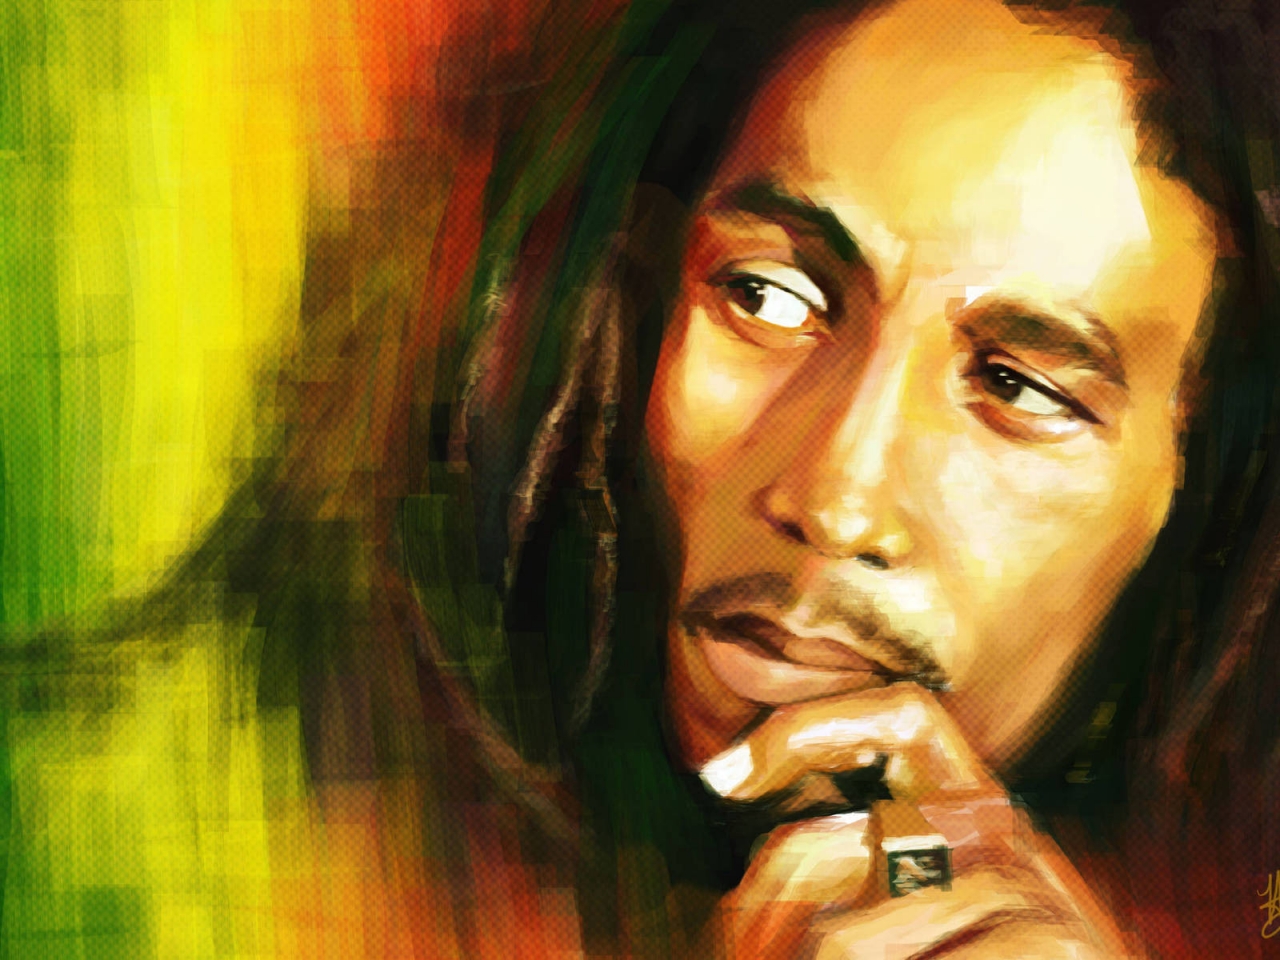 Bob Marley Artwork for 1280 x 960 resolution